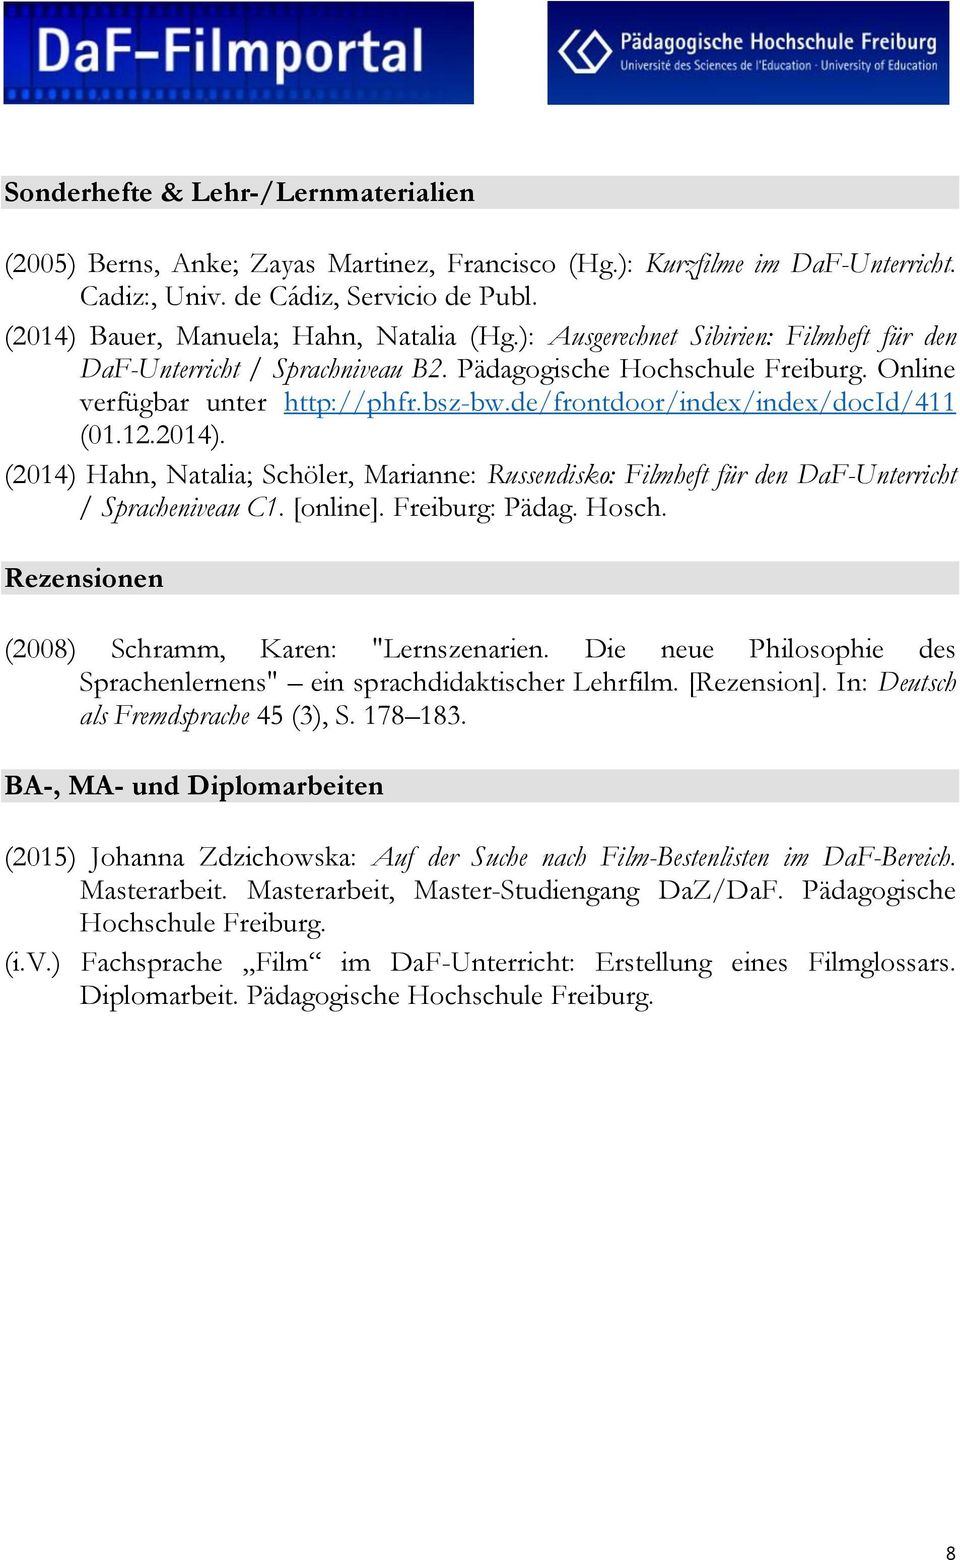 de/frontdoor/index/index/docid/411 (01.12.2014). (2014) Hahn, Natalia; Schöler, Marianne: Russendisko: Filmheft für den DaF-Unterricht / Spracheniveau C1. [online]. Freiburg: Pädag. Hosch.